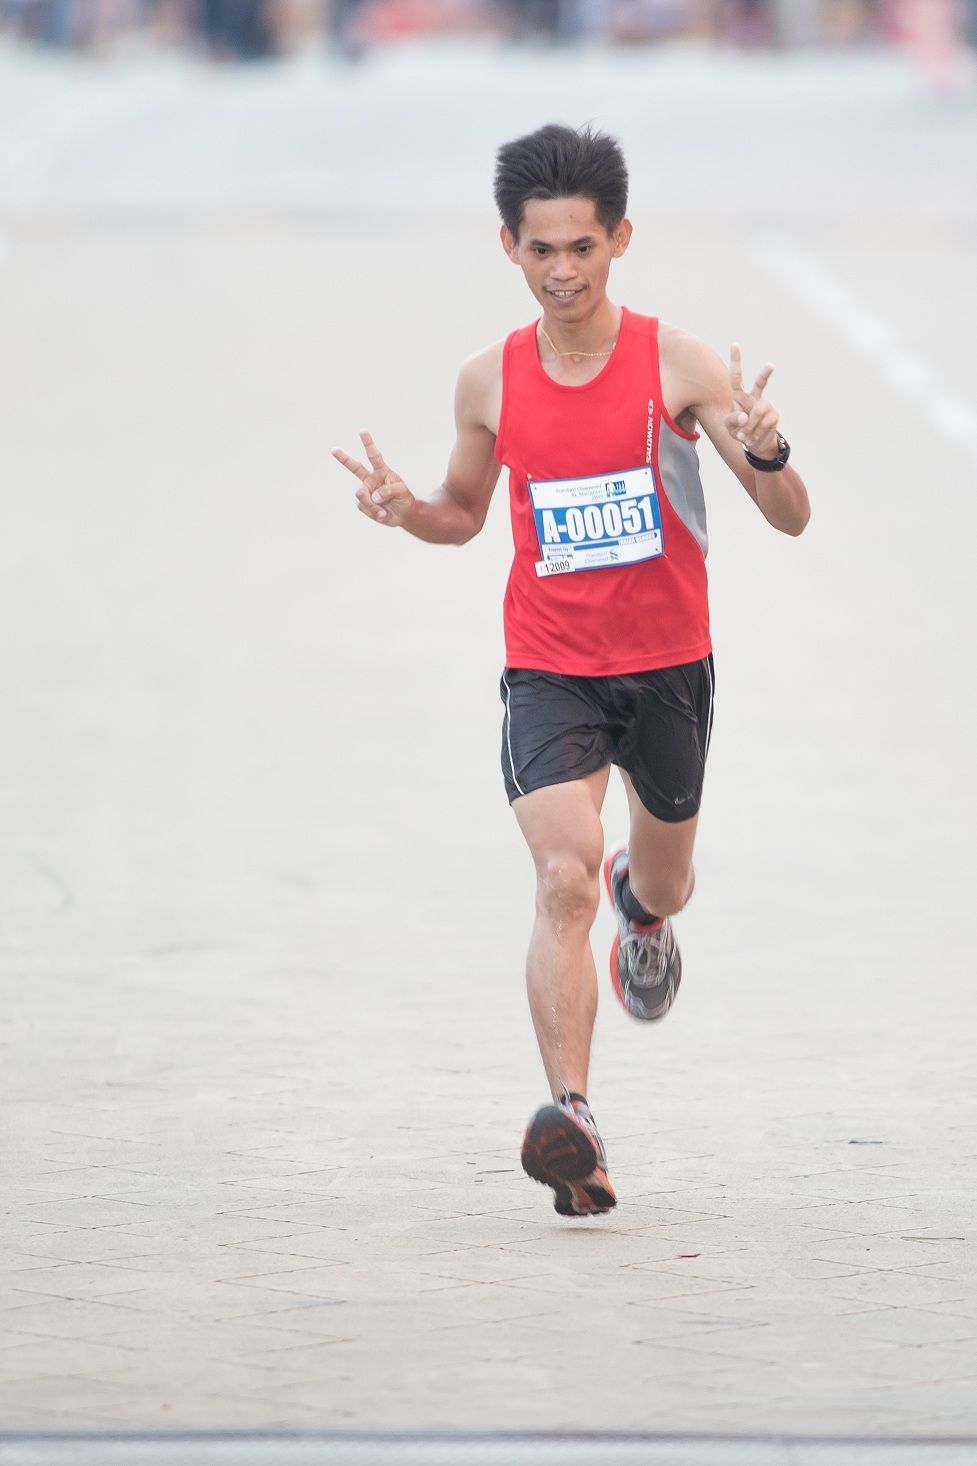 Fabian @ Osmond Bin Daimor First malaysian runner